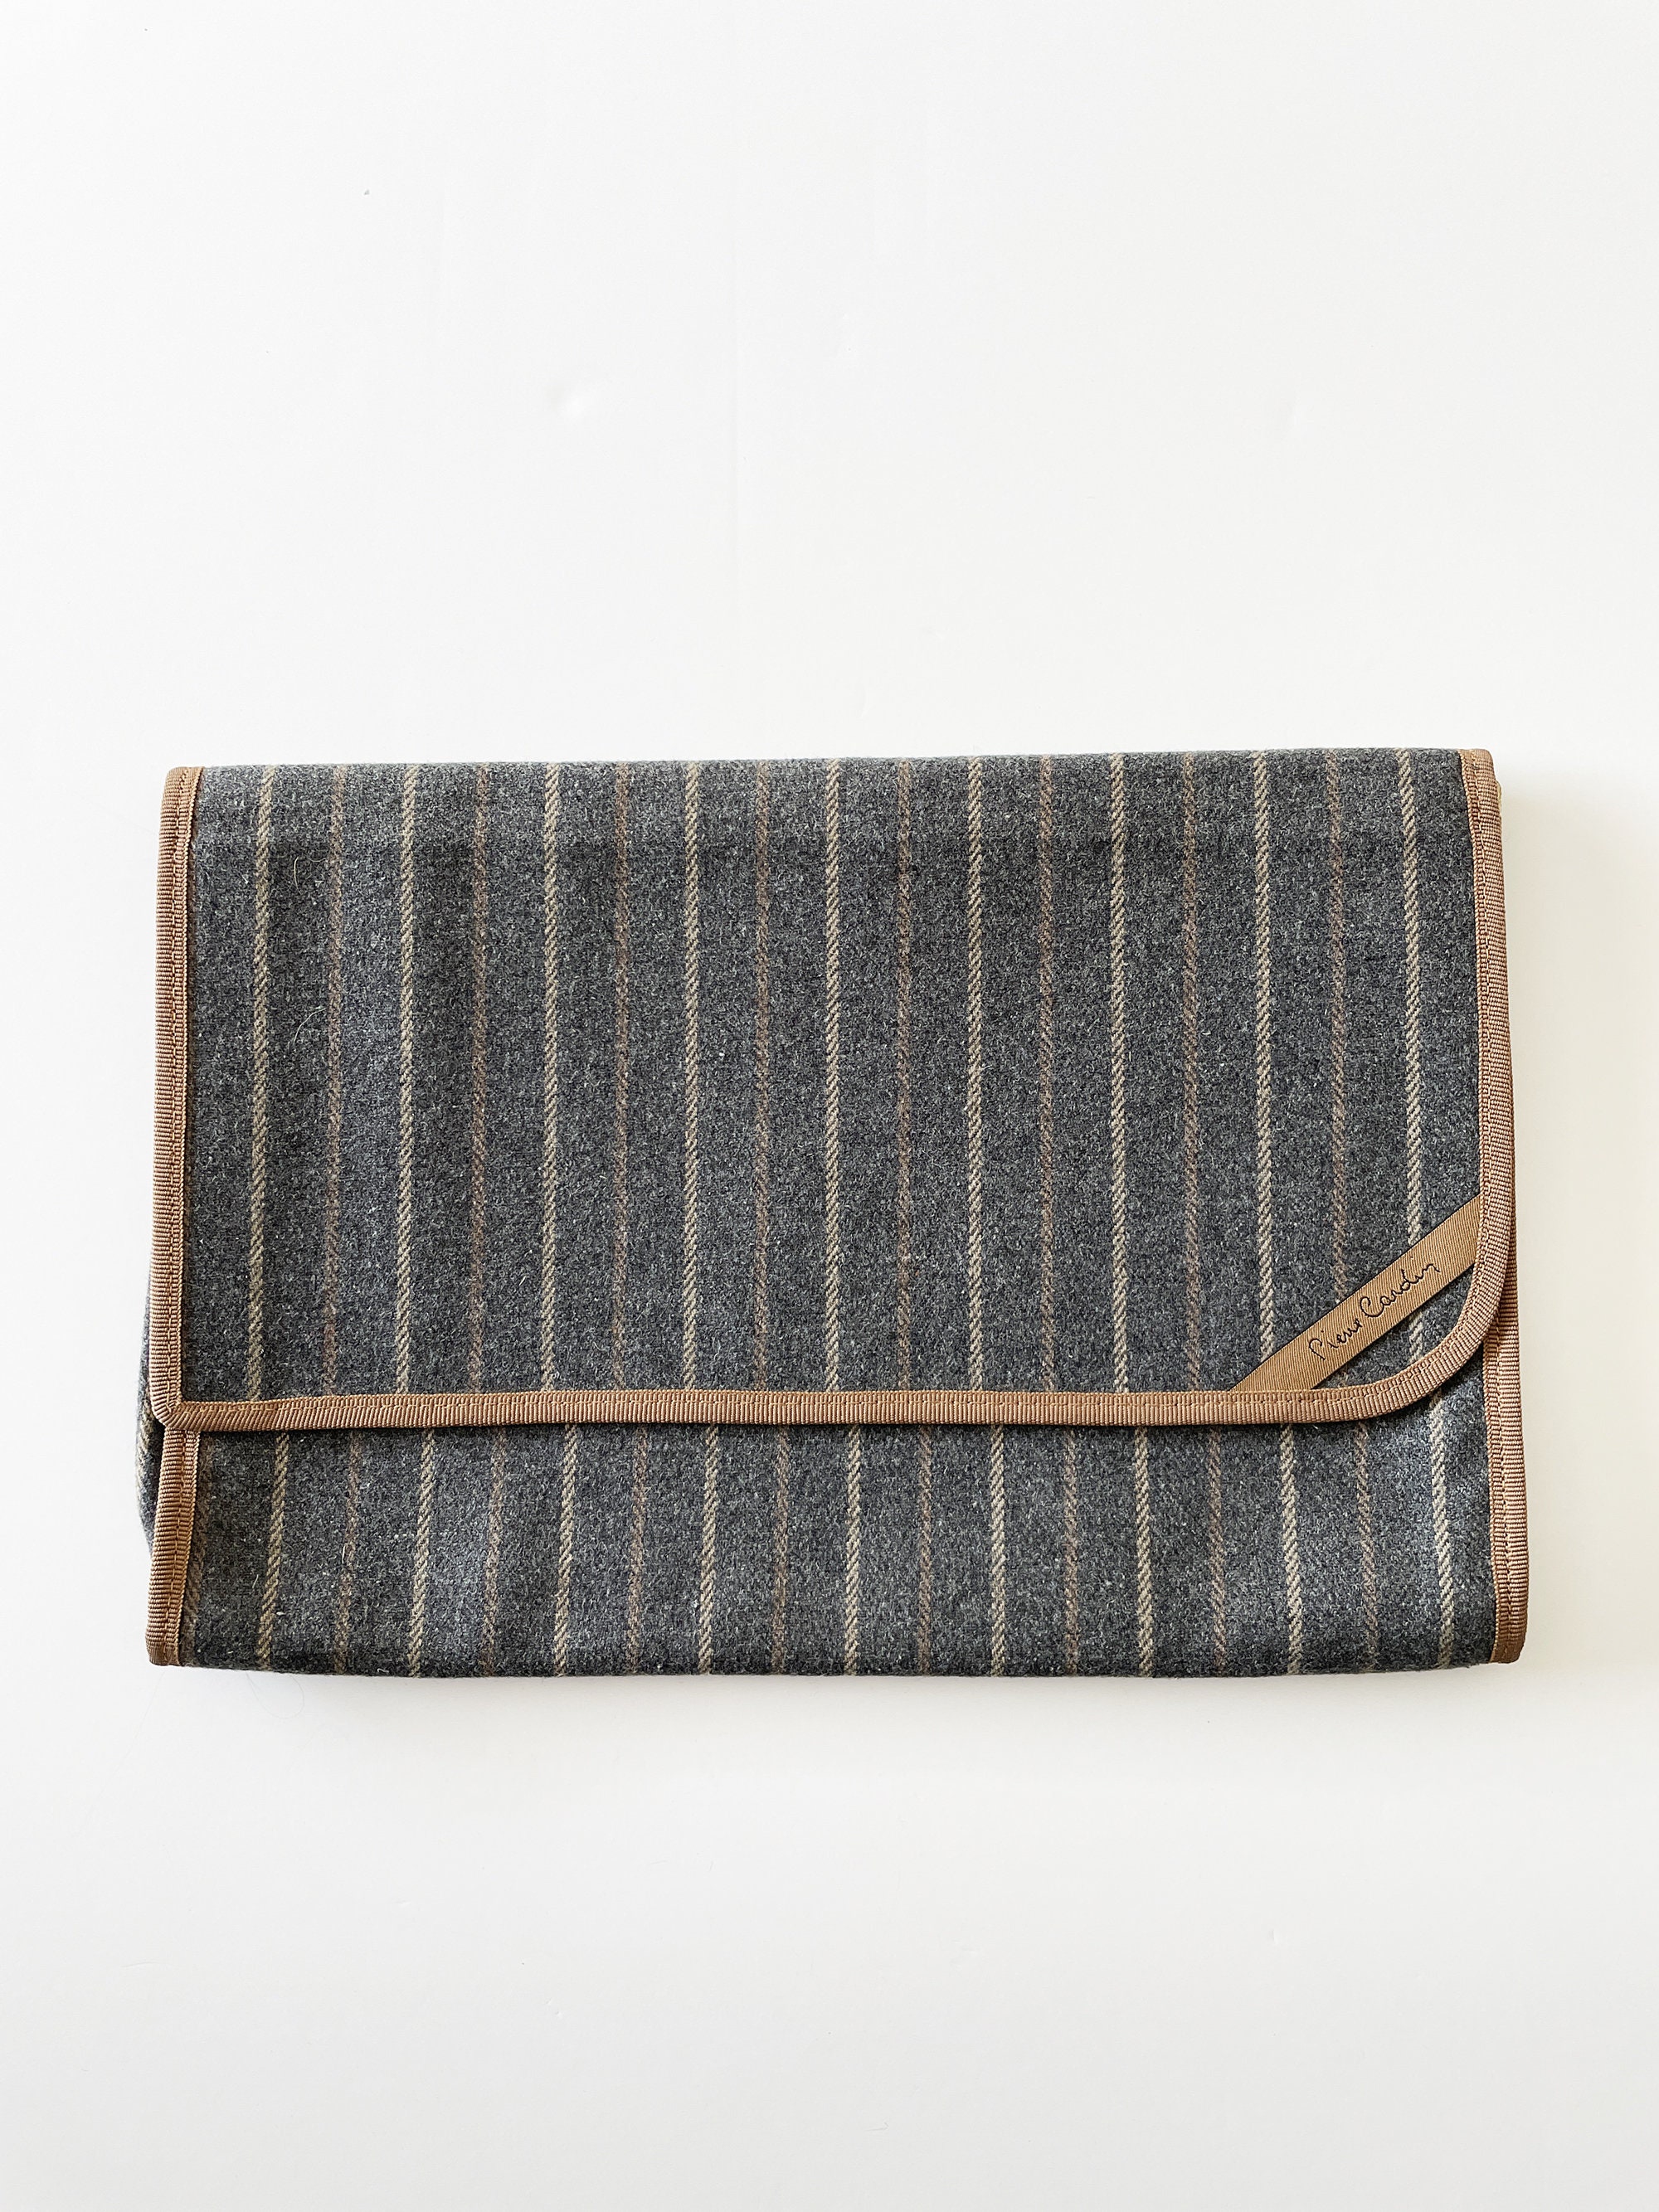 Pierre Cardin Men's Vintage 1980 Striped Wool Clutch Bag